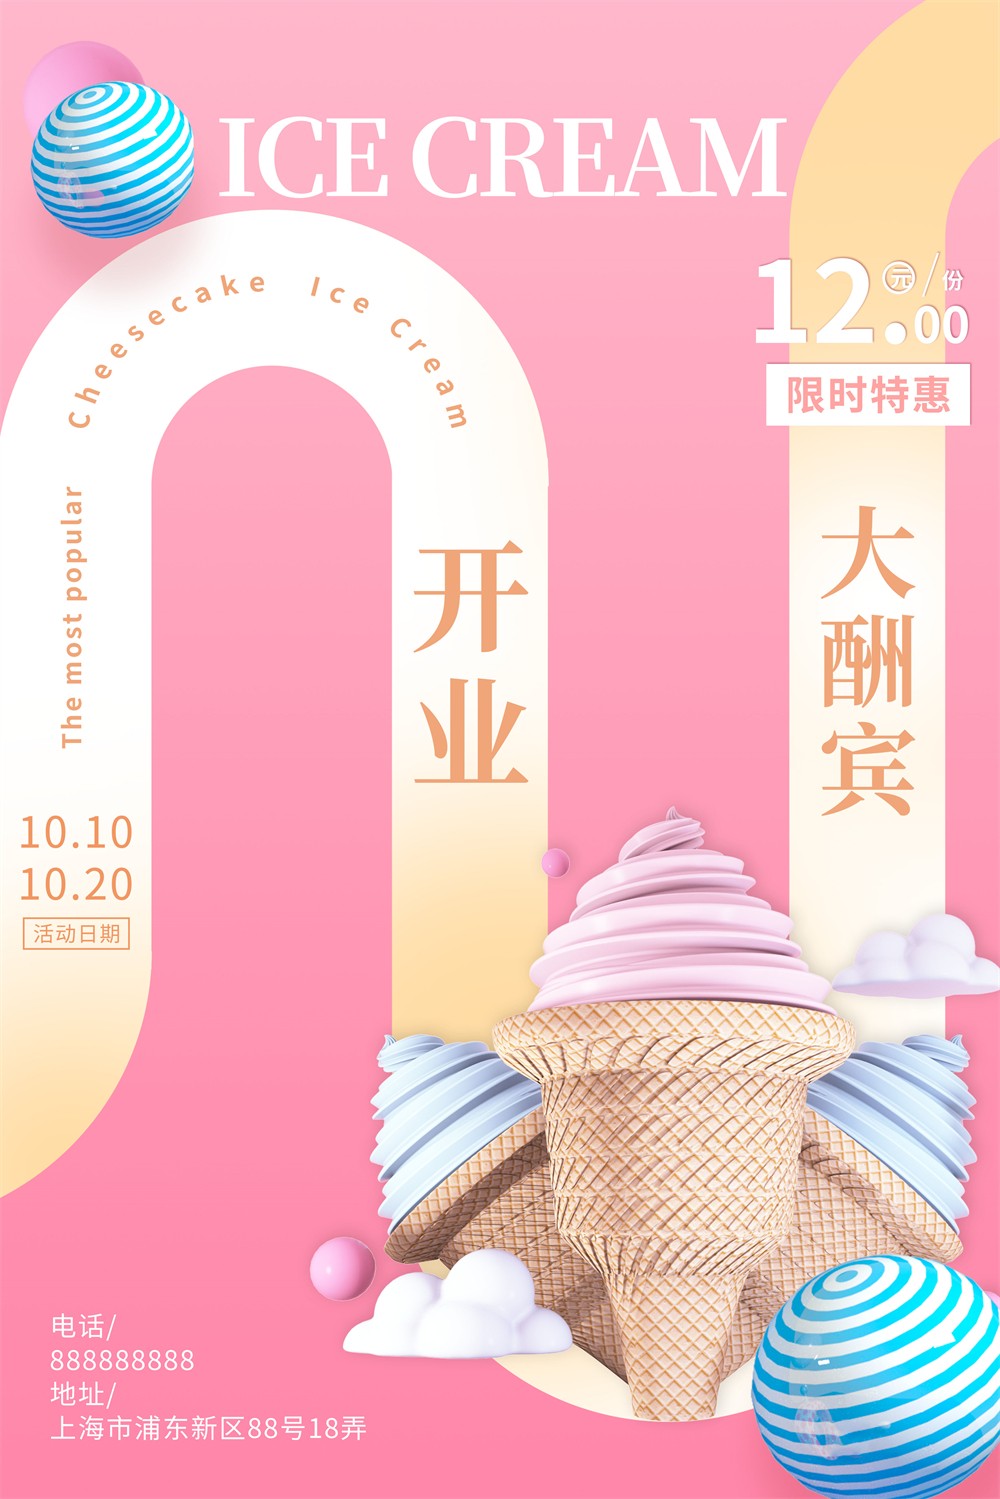 冰淇淋冷饮店开业酬宾活动宣传海报